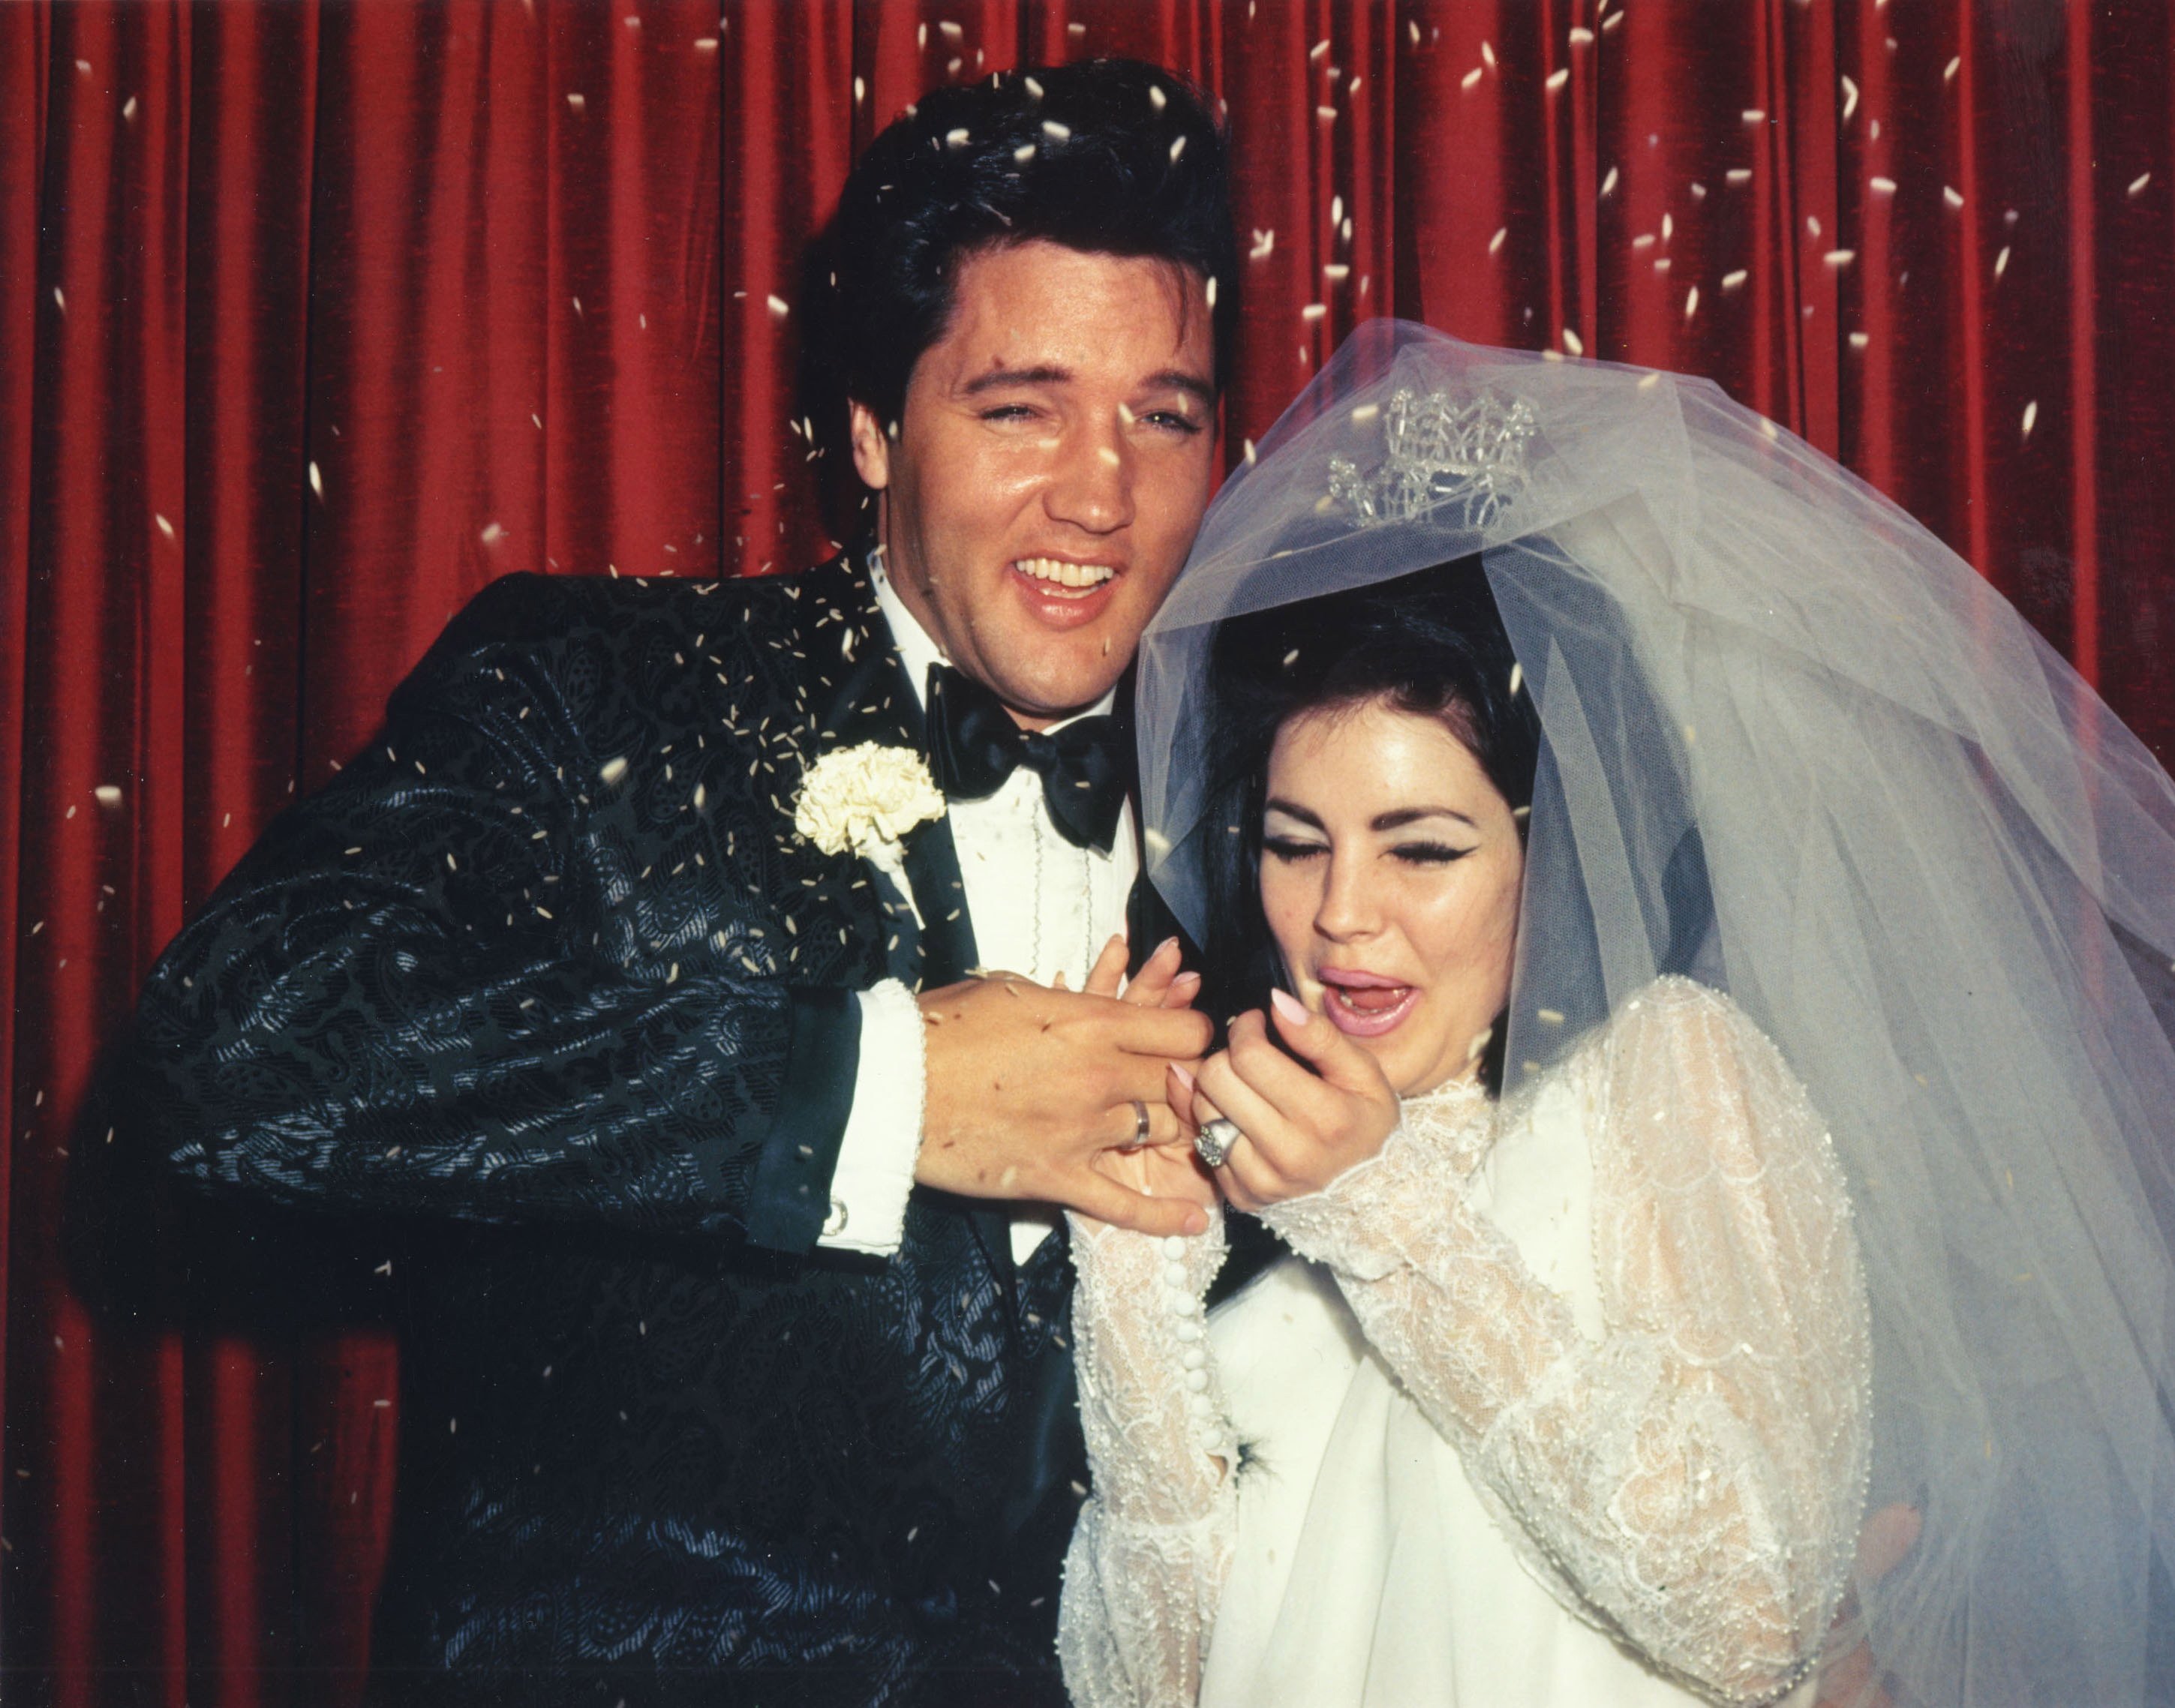 Elvis and Priscilla Presley with confetti